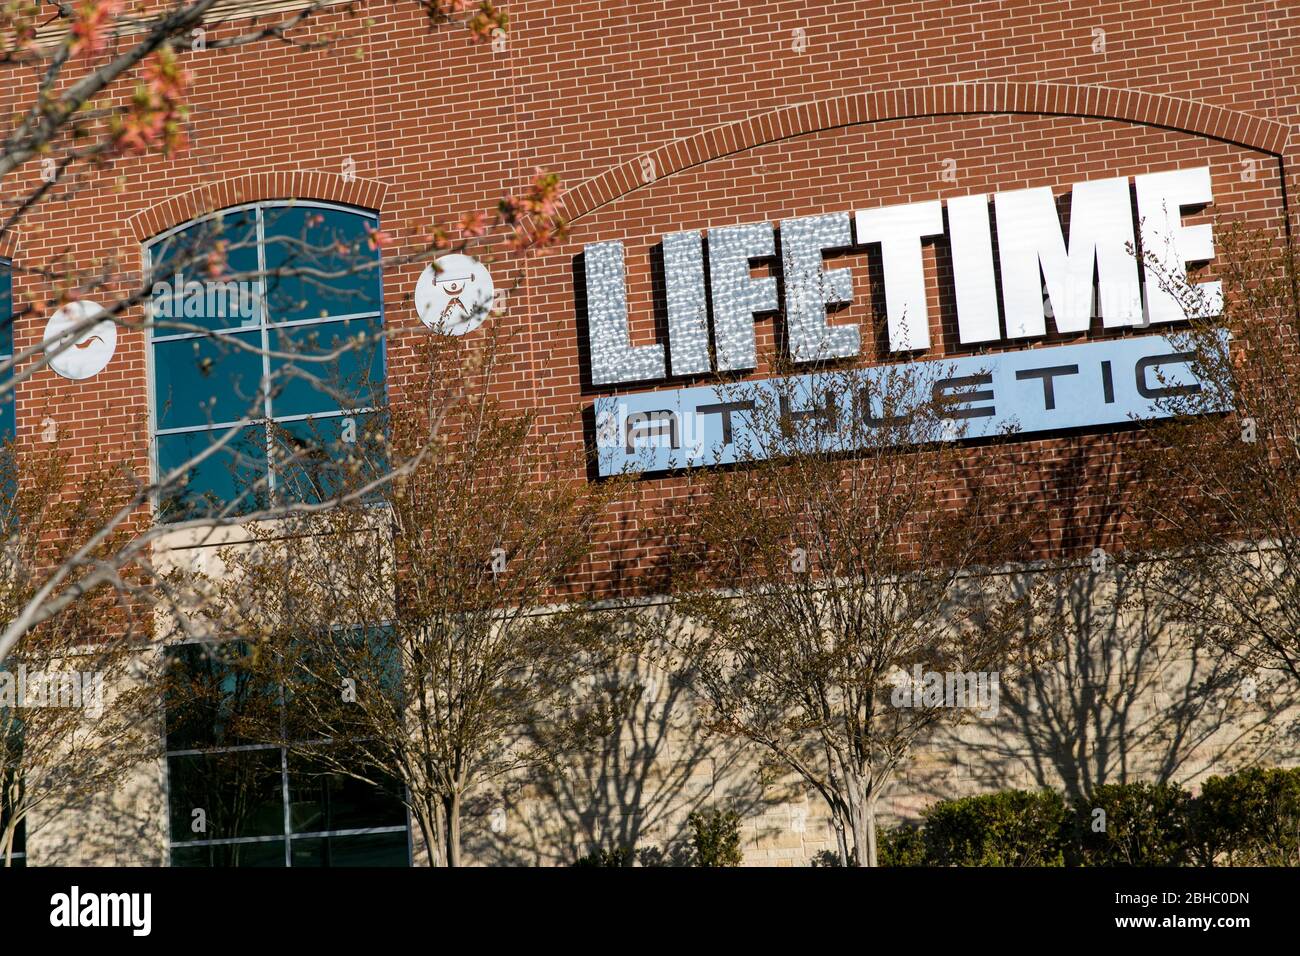 Un logo en dehors d'un centre de conditionnement physique Life Time Athletic à Columbia, Maryland, le 22 avril 2020. Banque D'Images